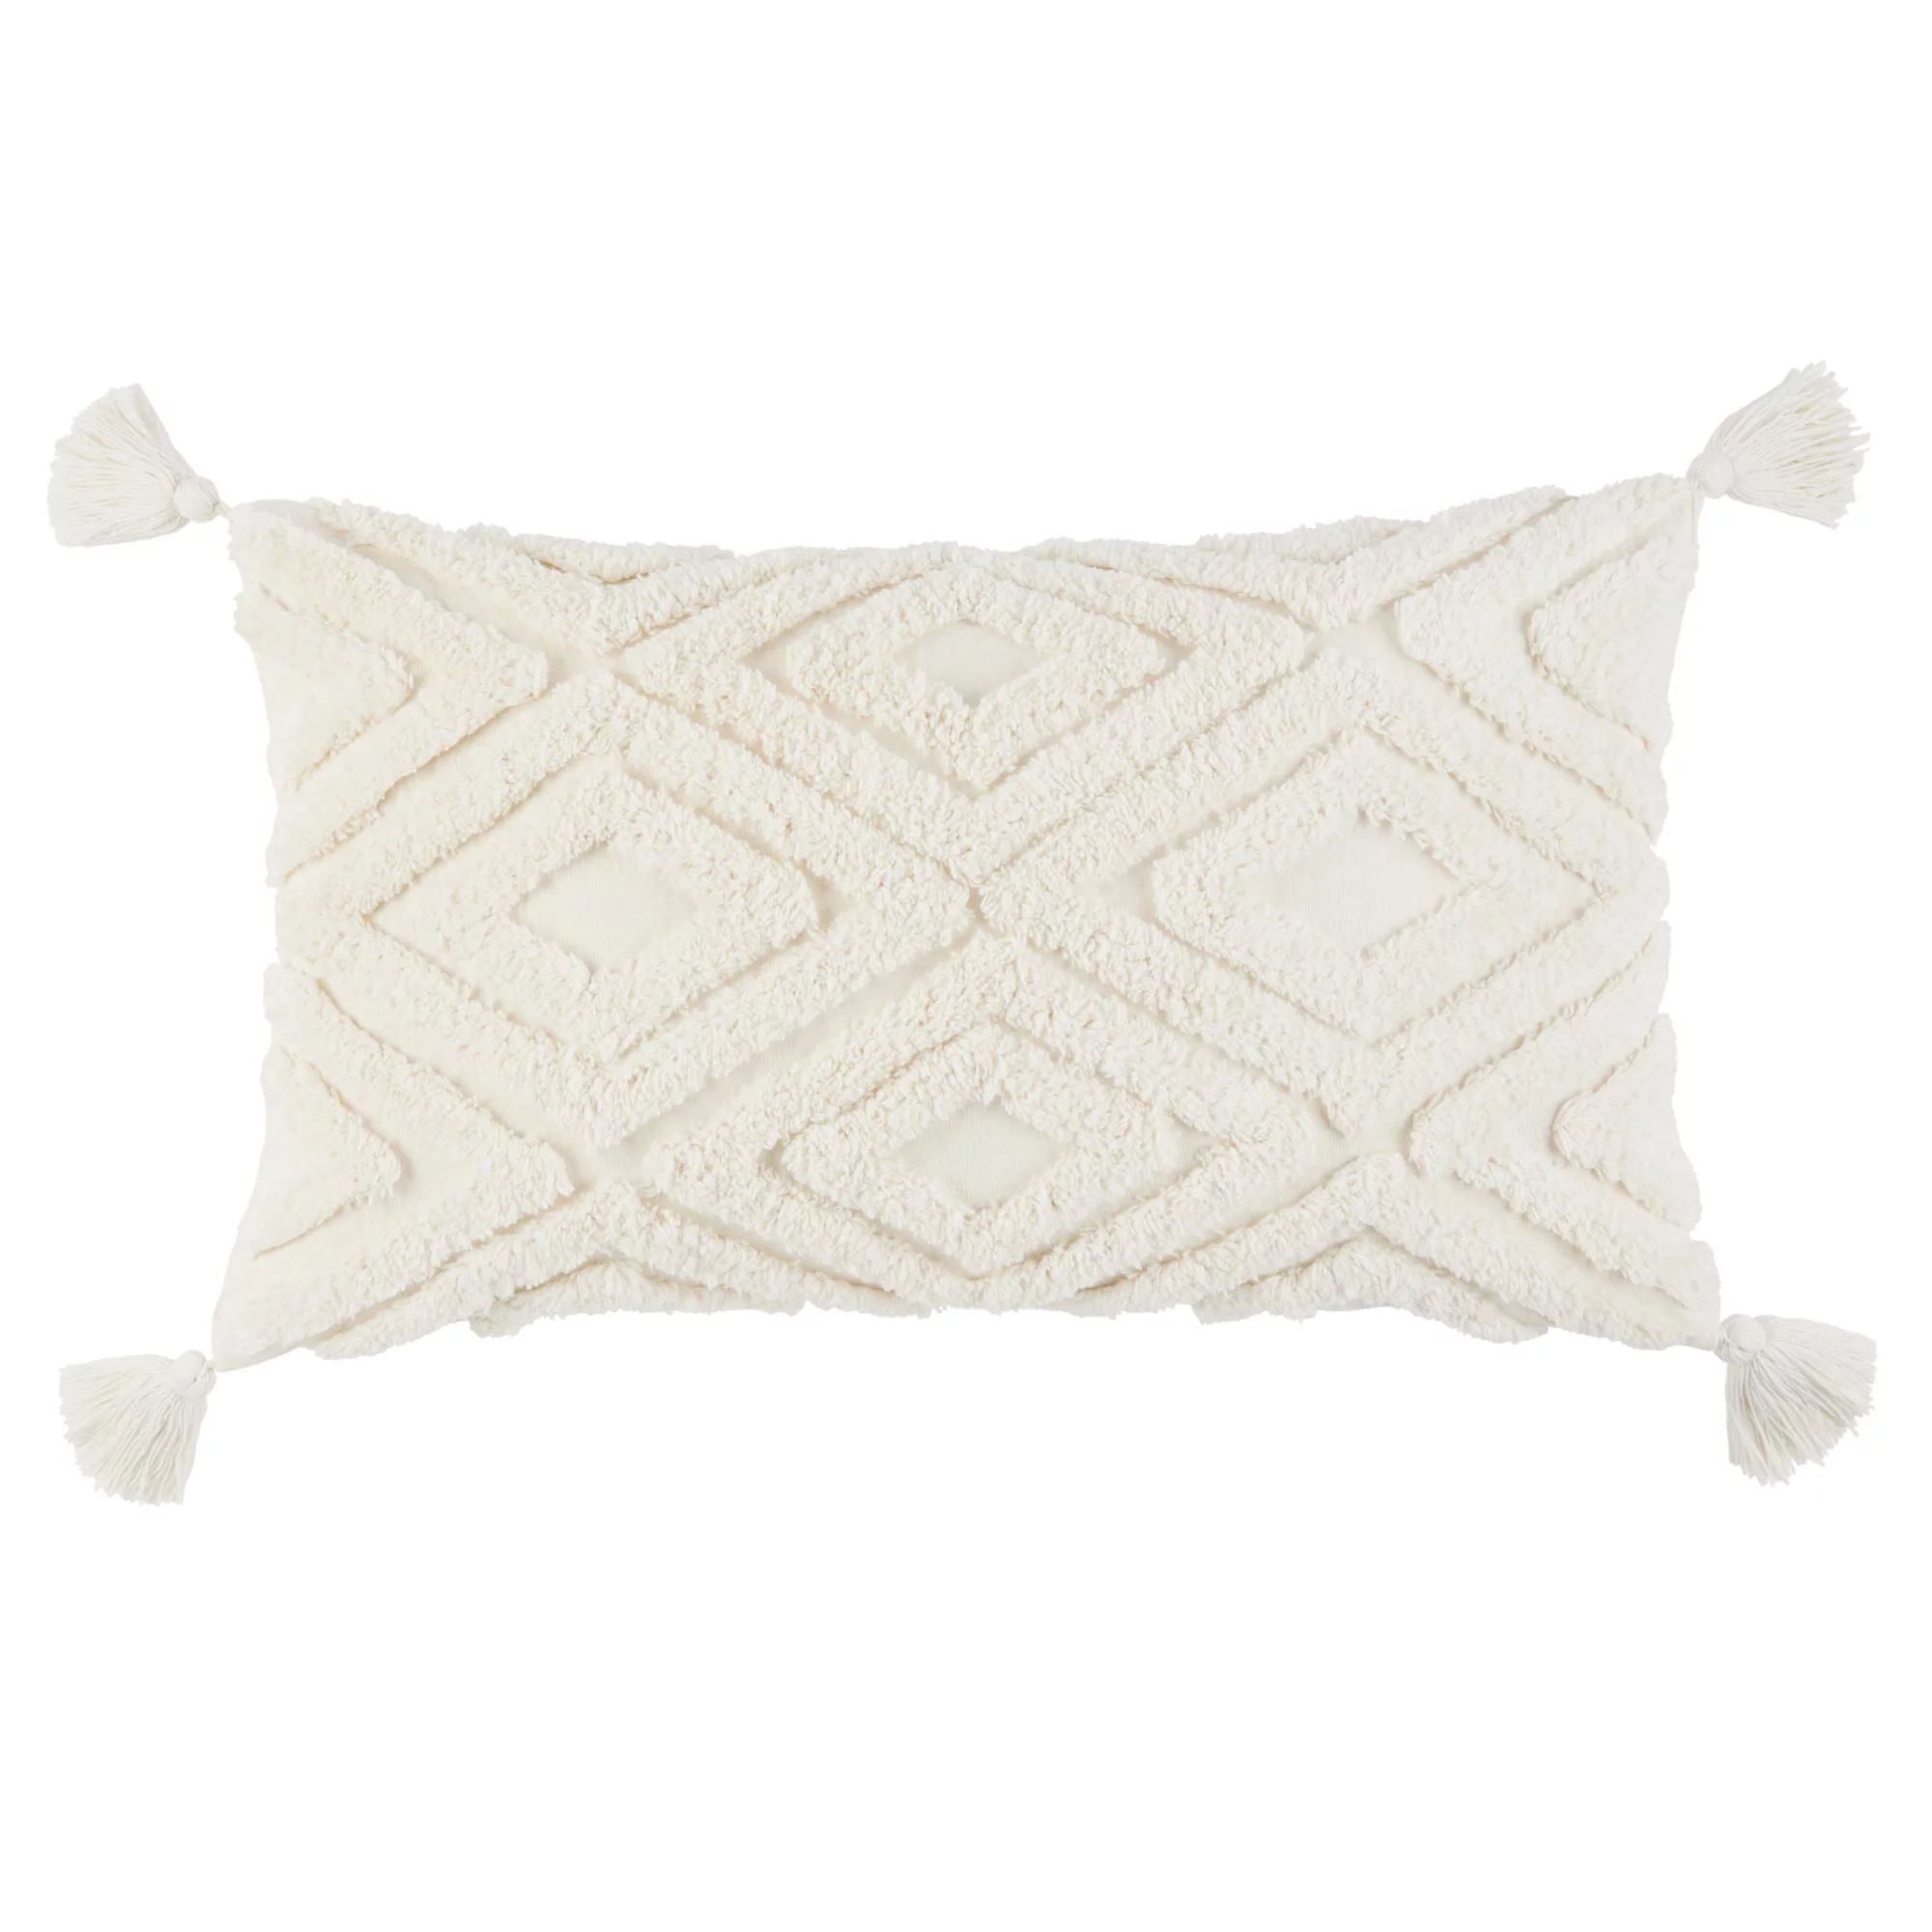 Wanda June Home Diamond Tufted Lumbar Pillow, White, 14"x24" by Miranda Lambert | Walmart (US)